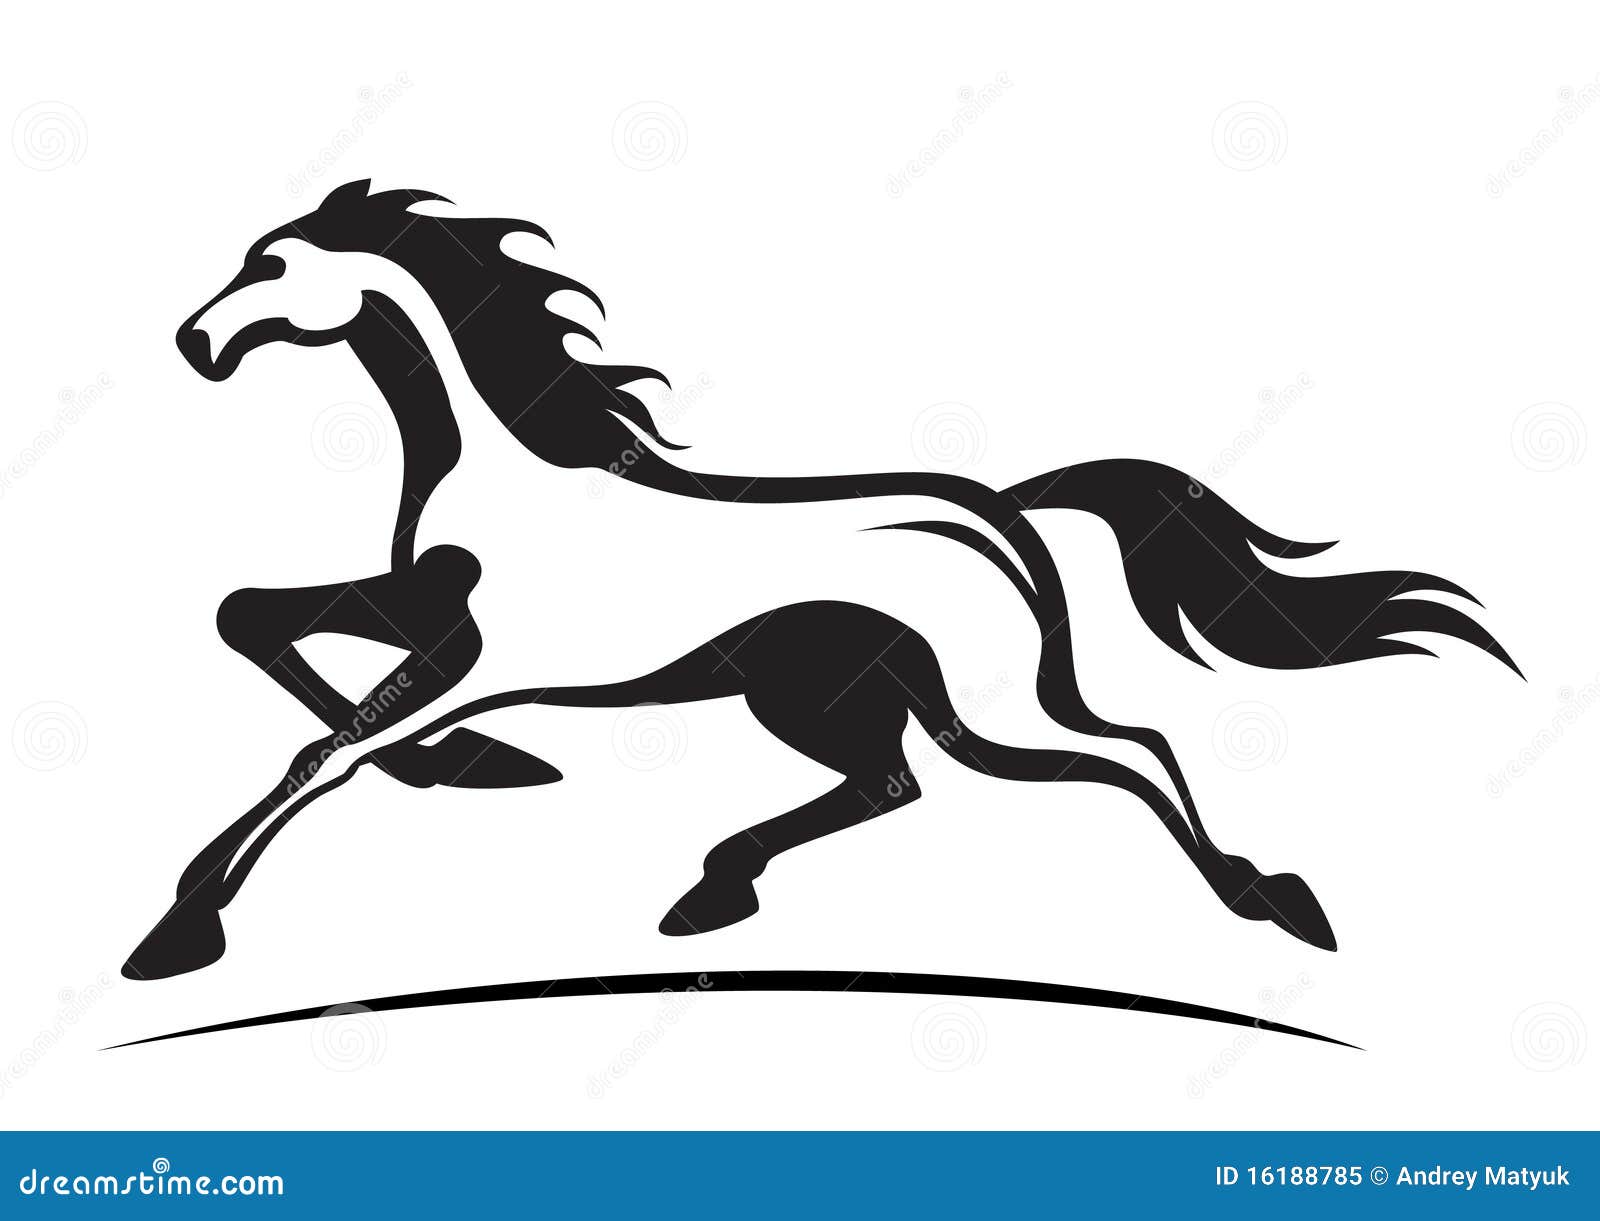 running stallion